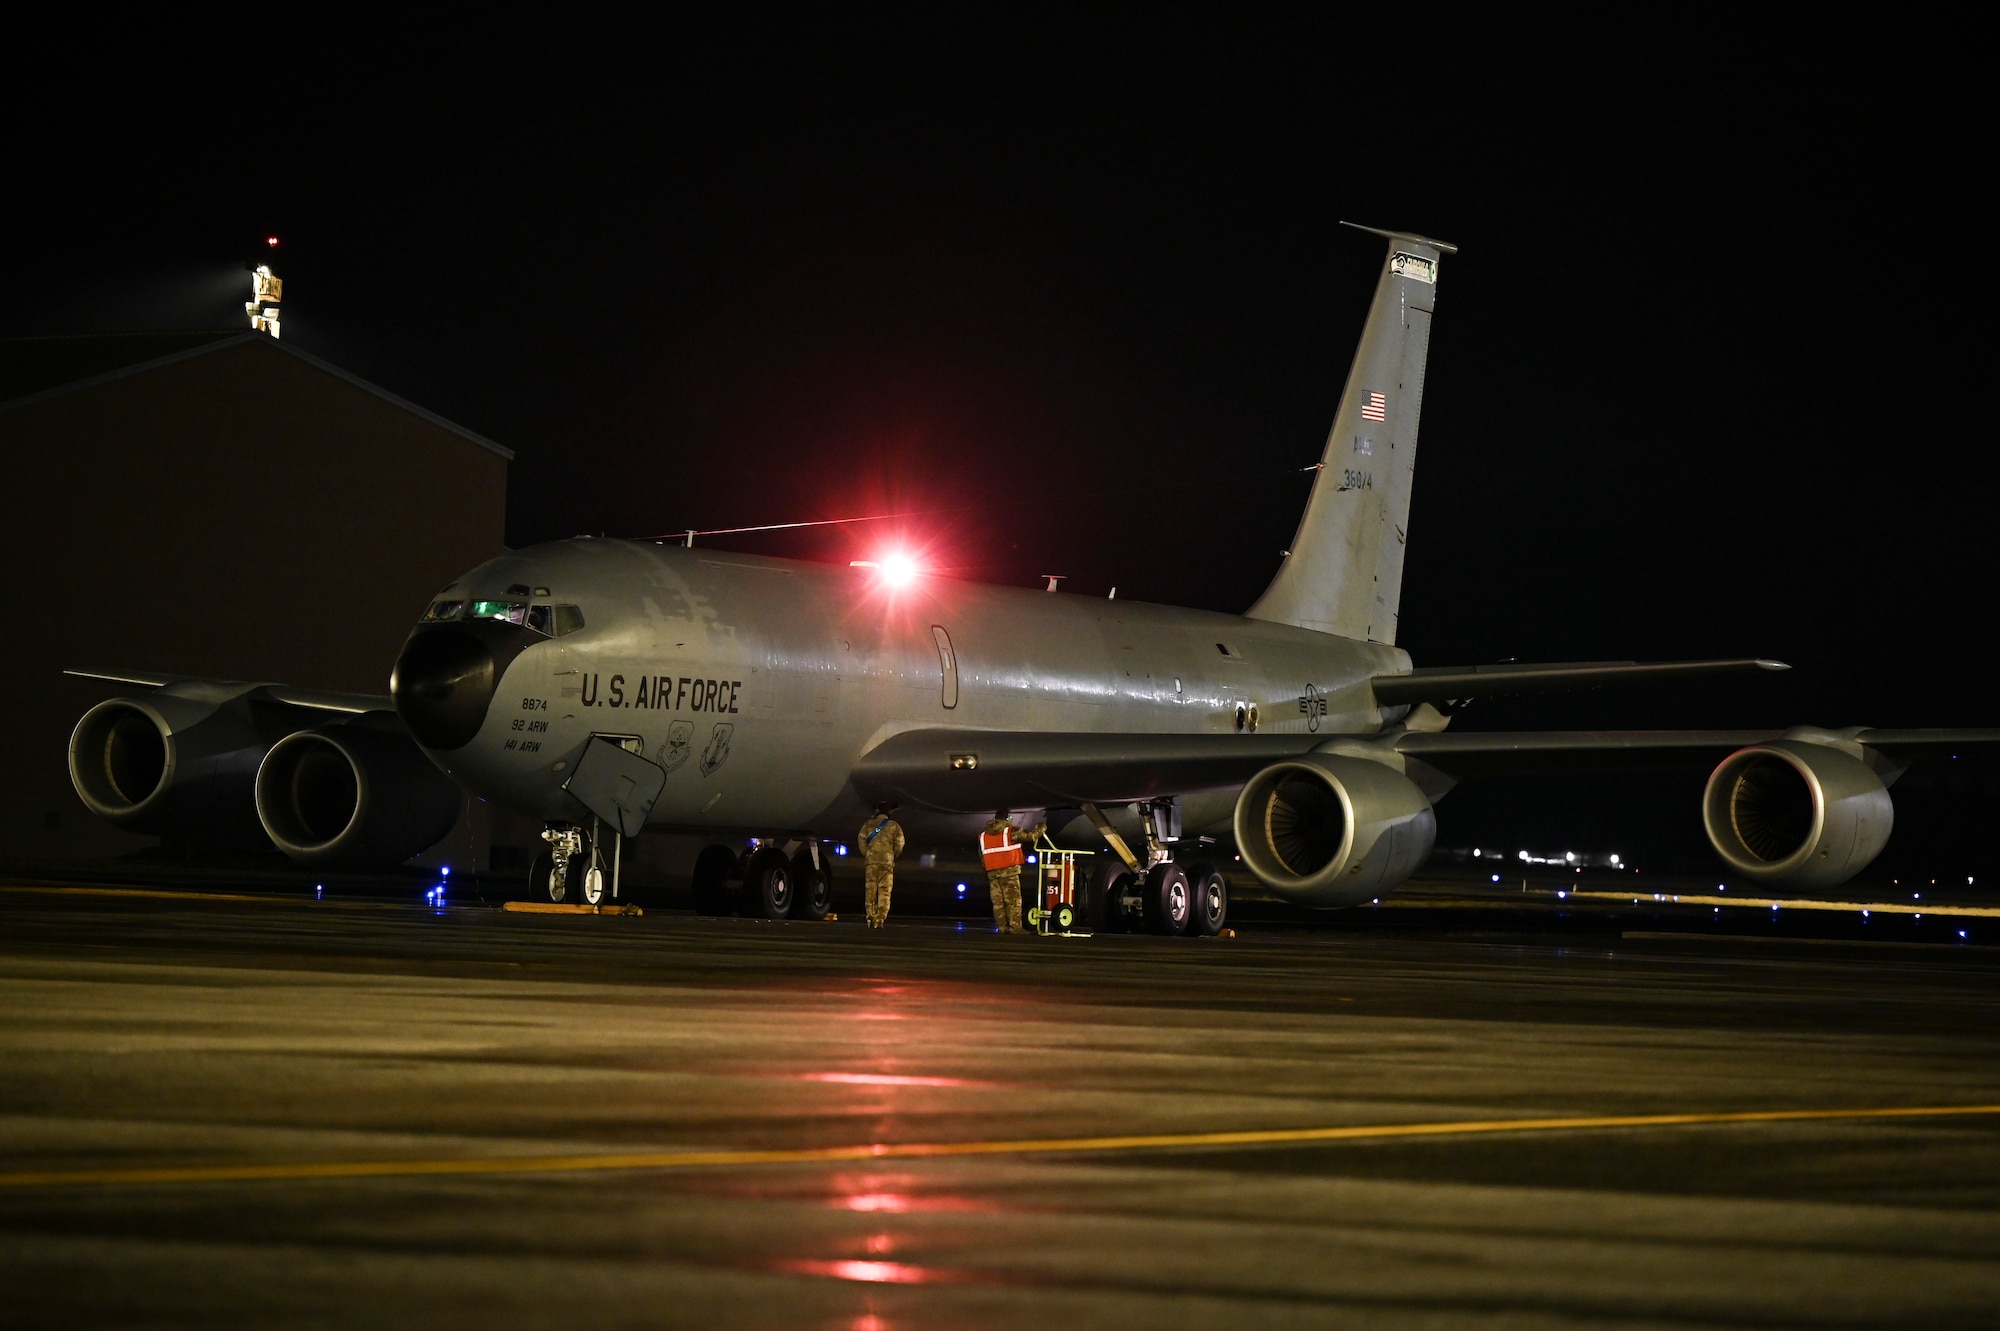 KC-135 on a flight line at night